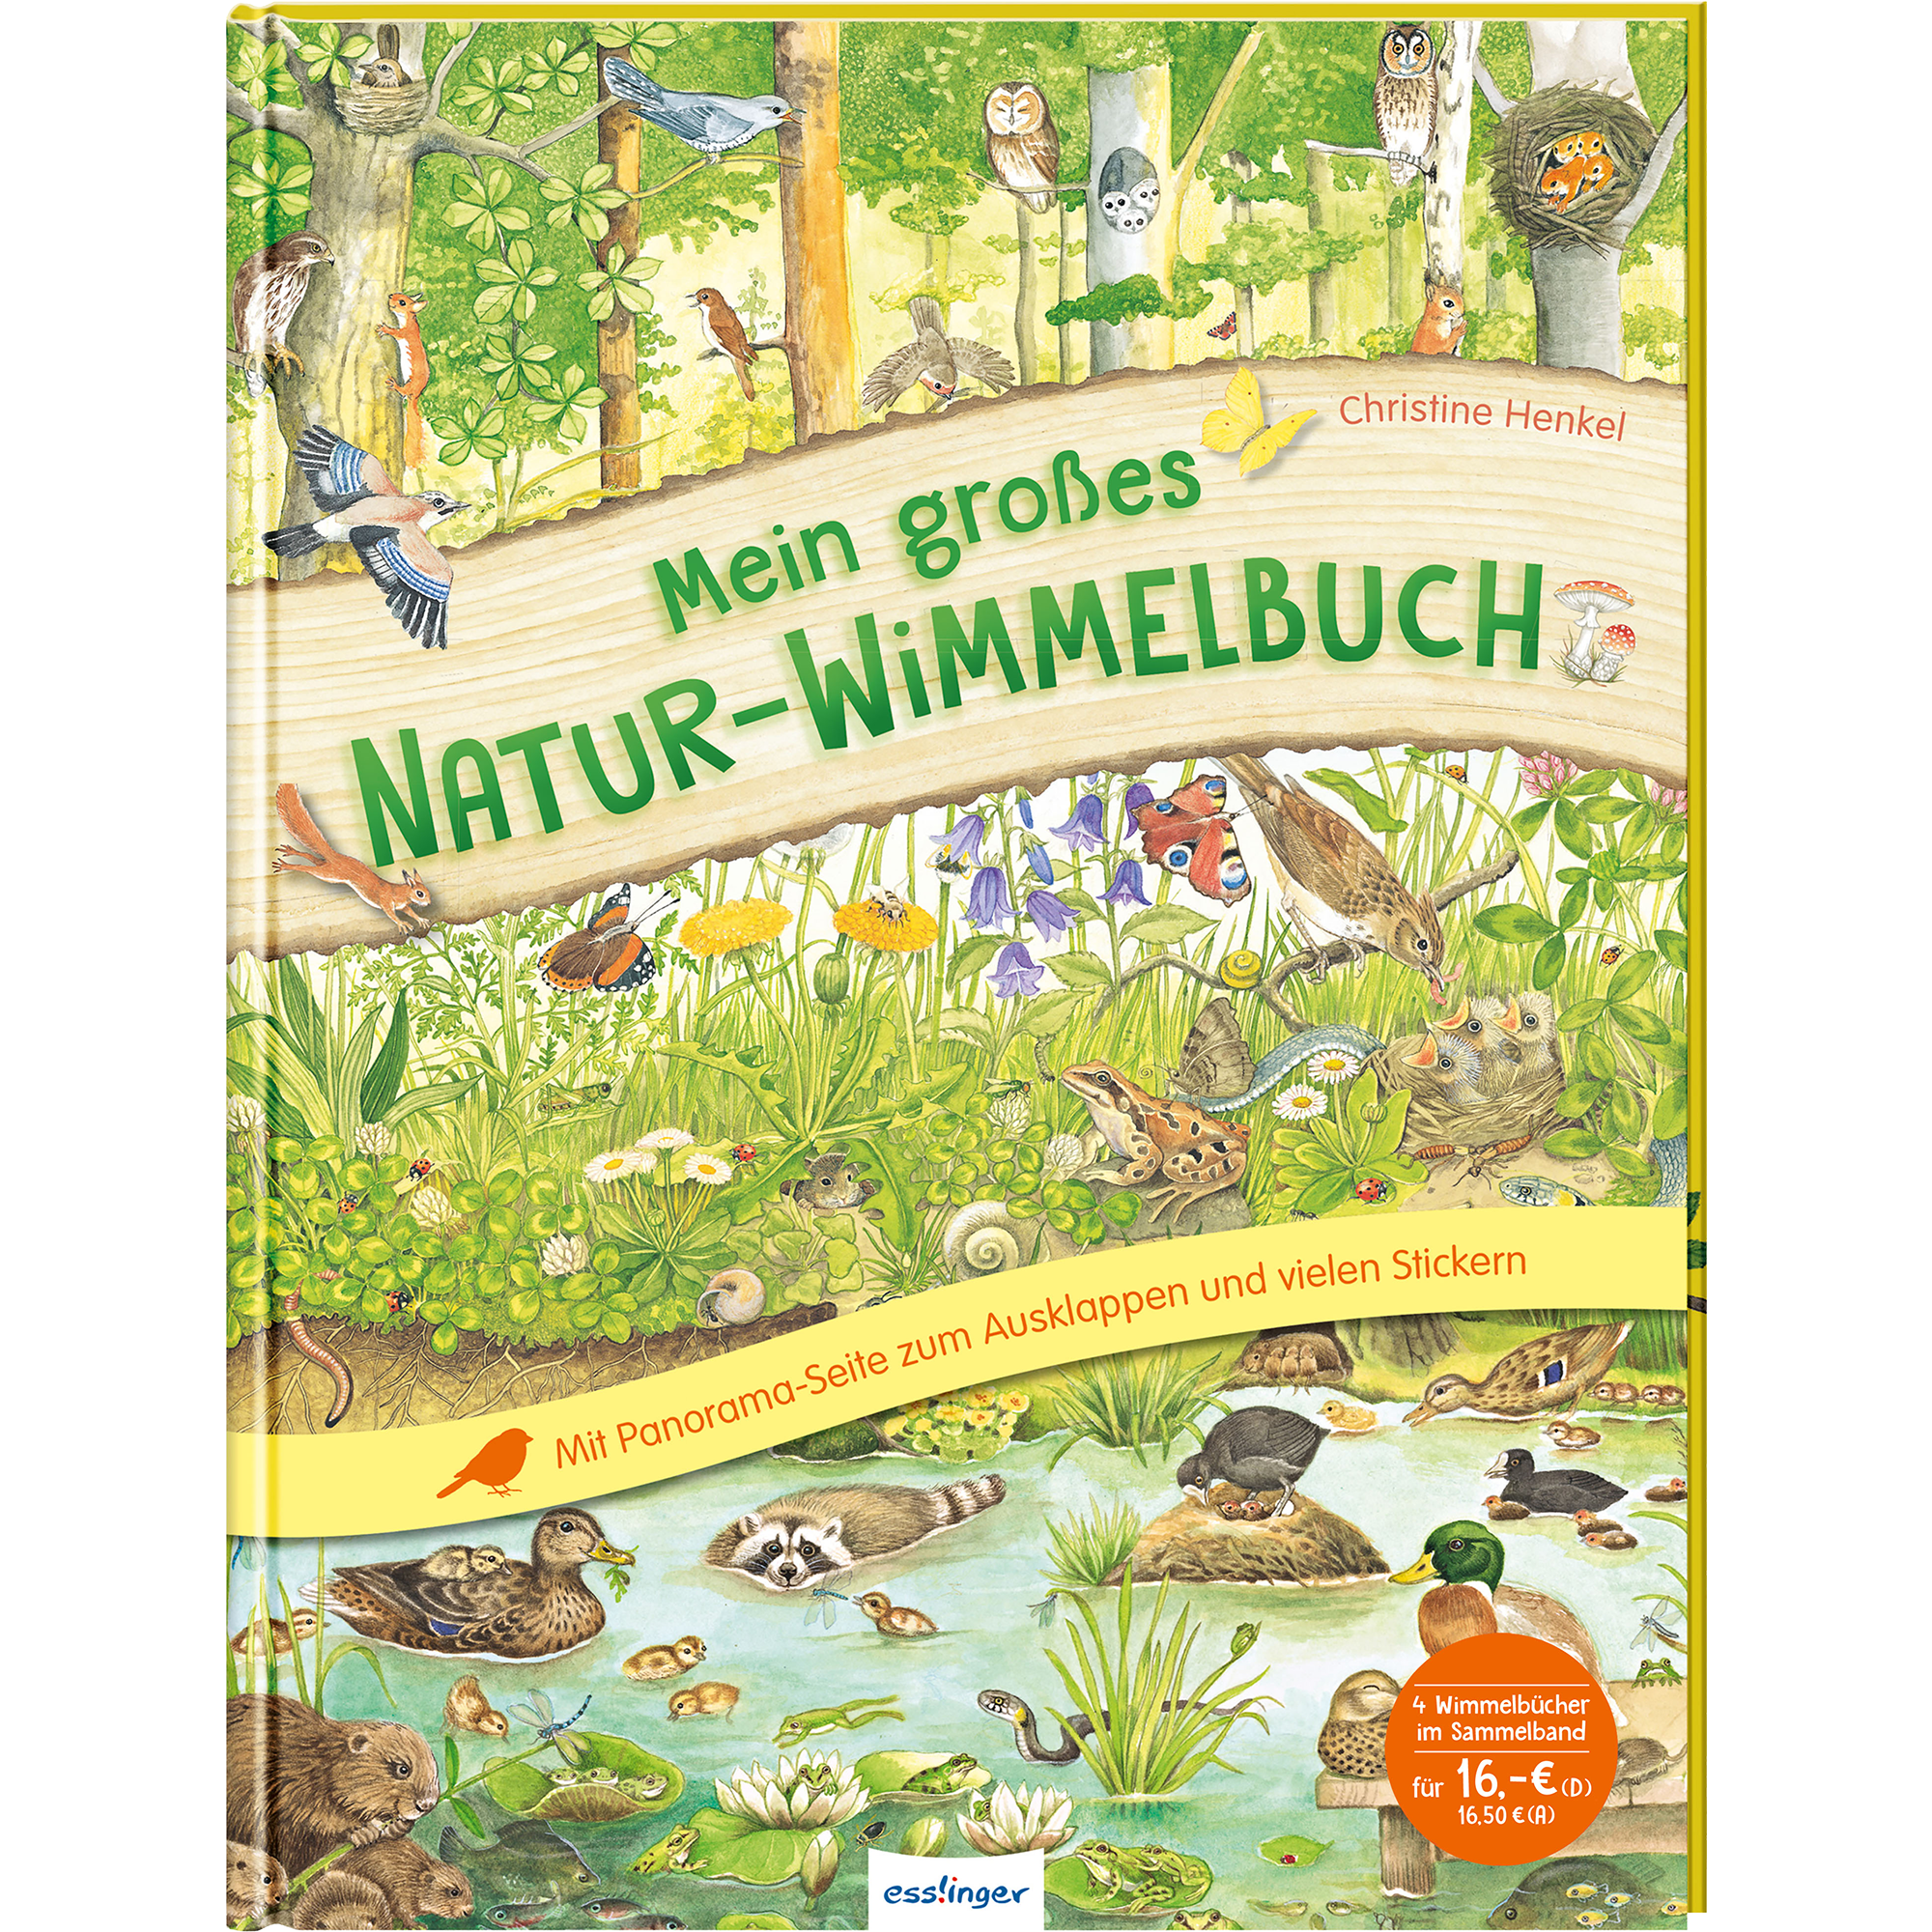 Mein großes Natur-Wimmelbuch ess!inger 2000576423072 1